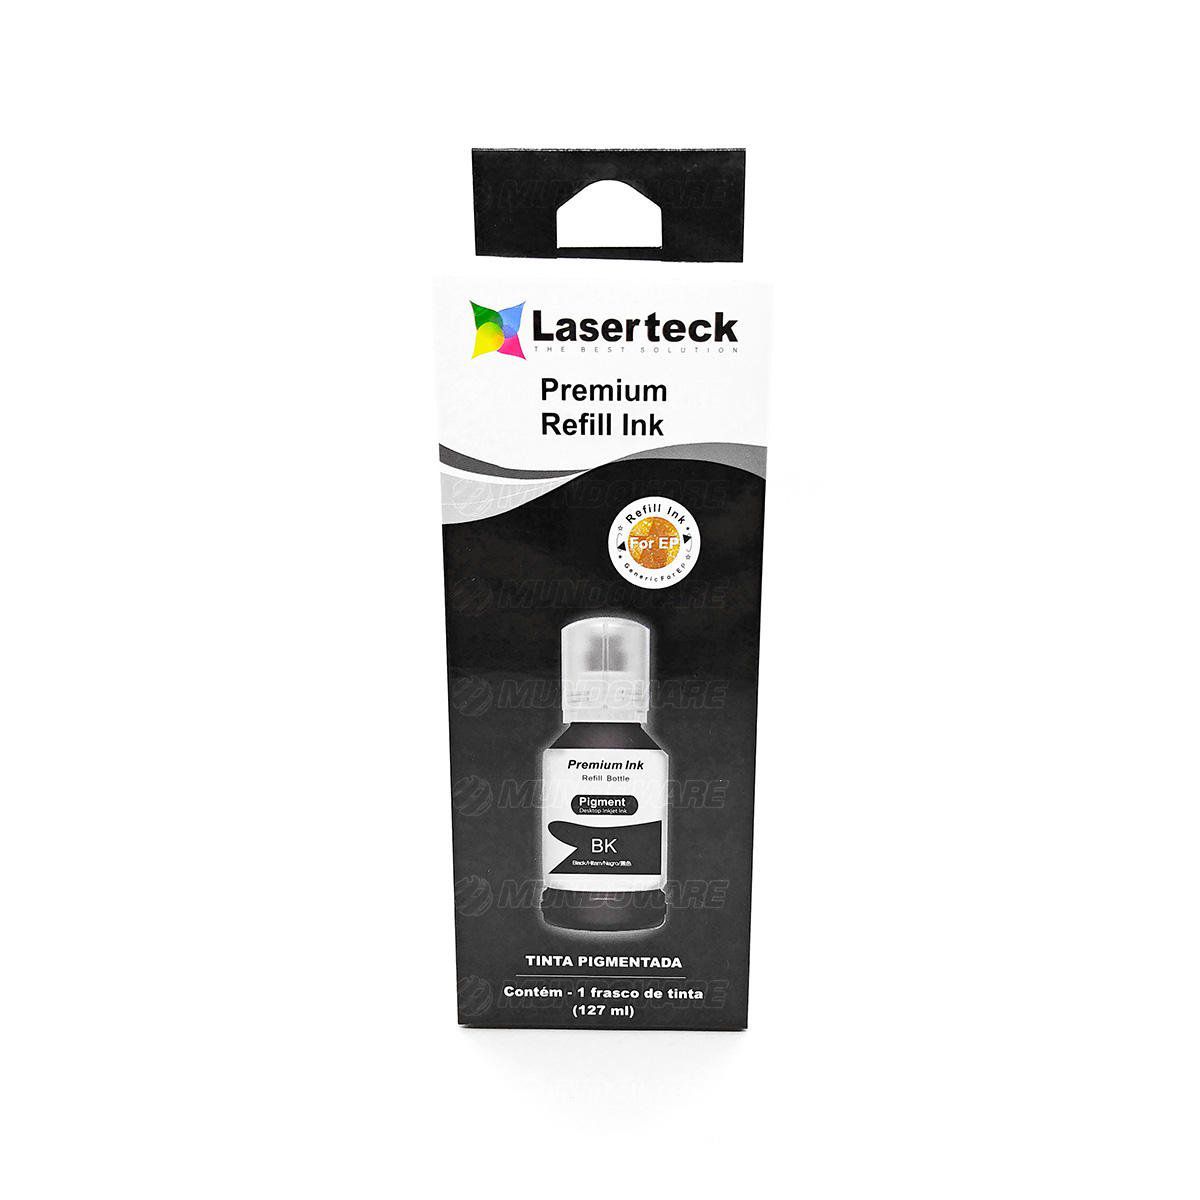 Compatível: Tinta Pigmentada Laserteck para Epson L4150 L4160 L6160 L6161 L6171 L6190 L6191 4150 6160 / Preto / 127ml